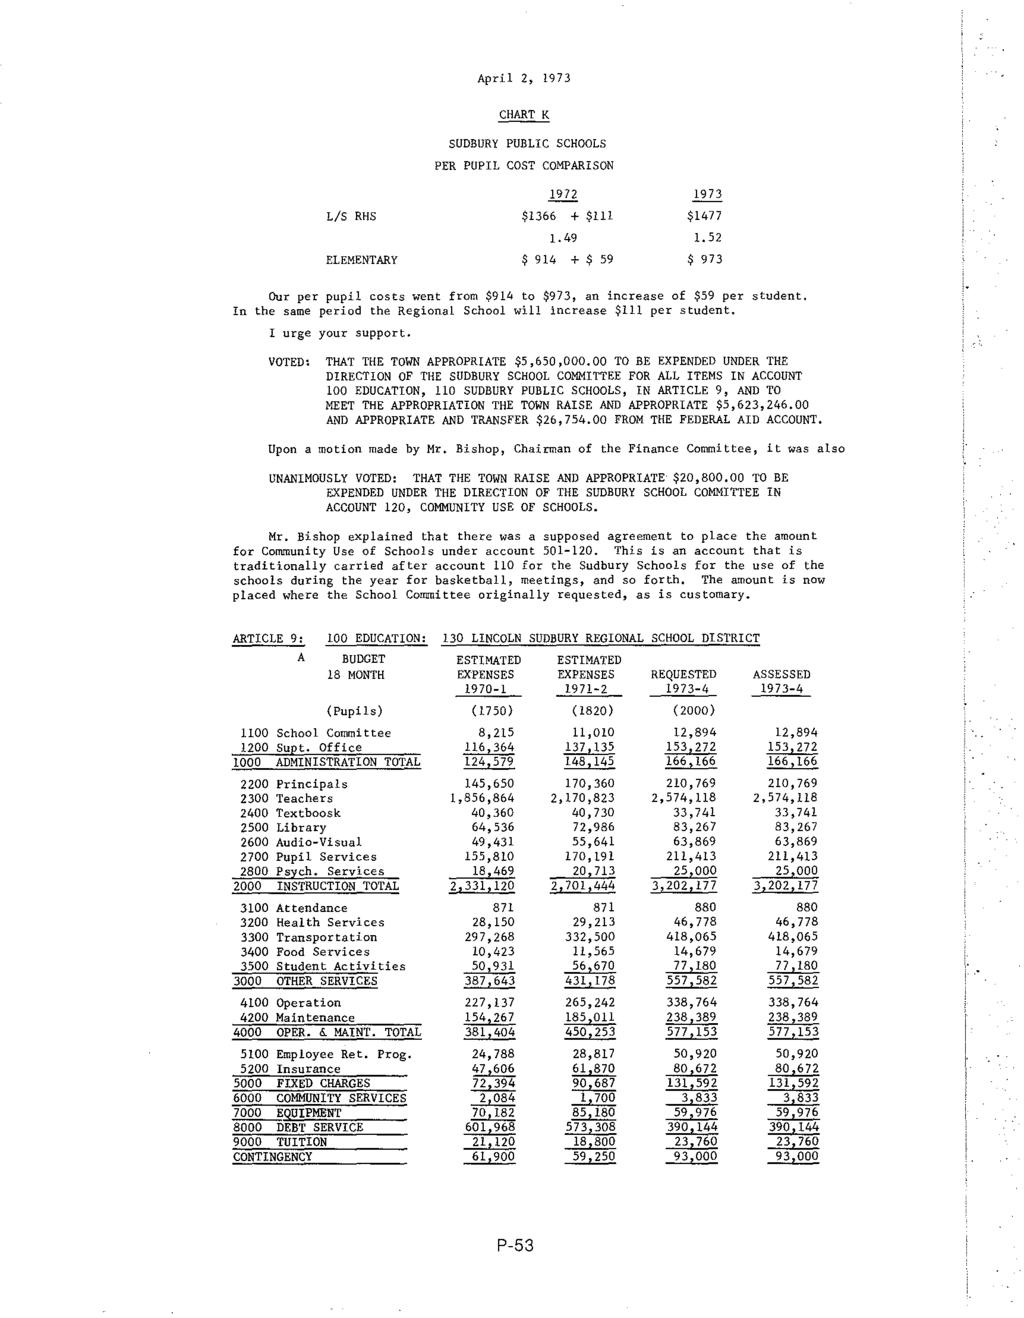 April 2, 1973 L/S RHS ELEMENTARY CHART K SUDBURY PUBLIC SCHOOLS PER PUPIL COST COMPARISON 1972 $1366 + $1!!!.49 $ 914 + $ 59 1973 $1477!